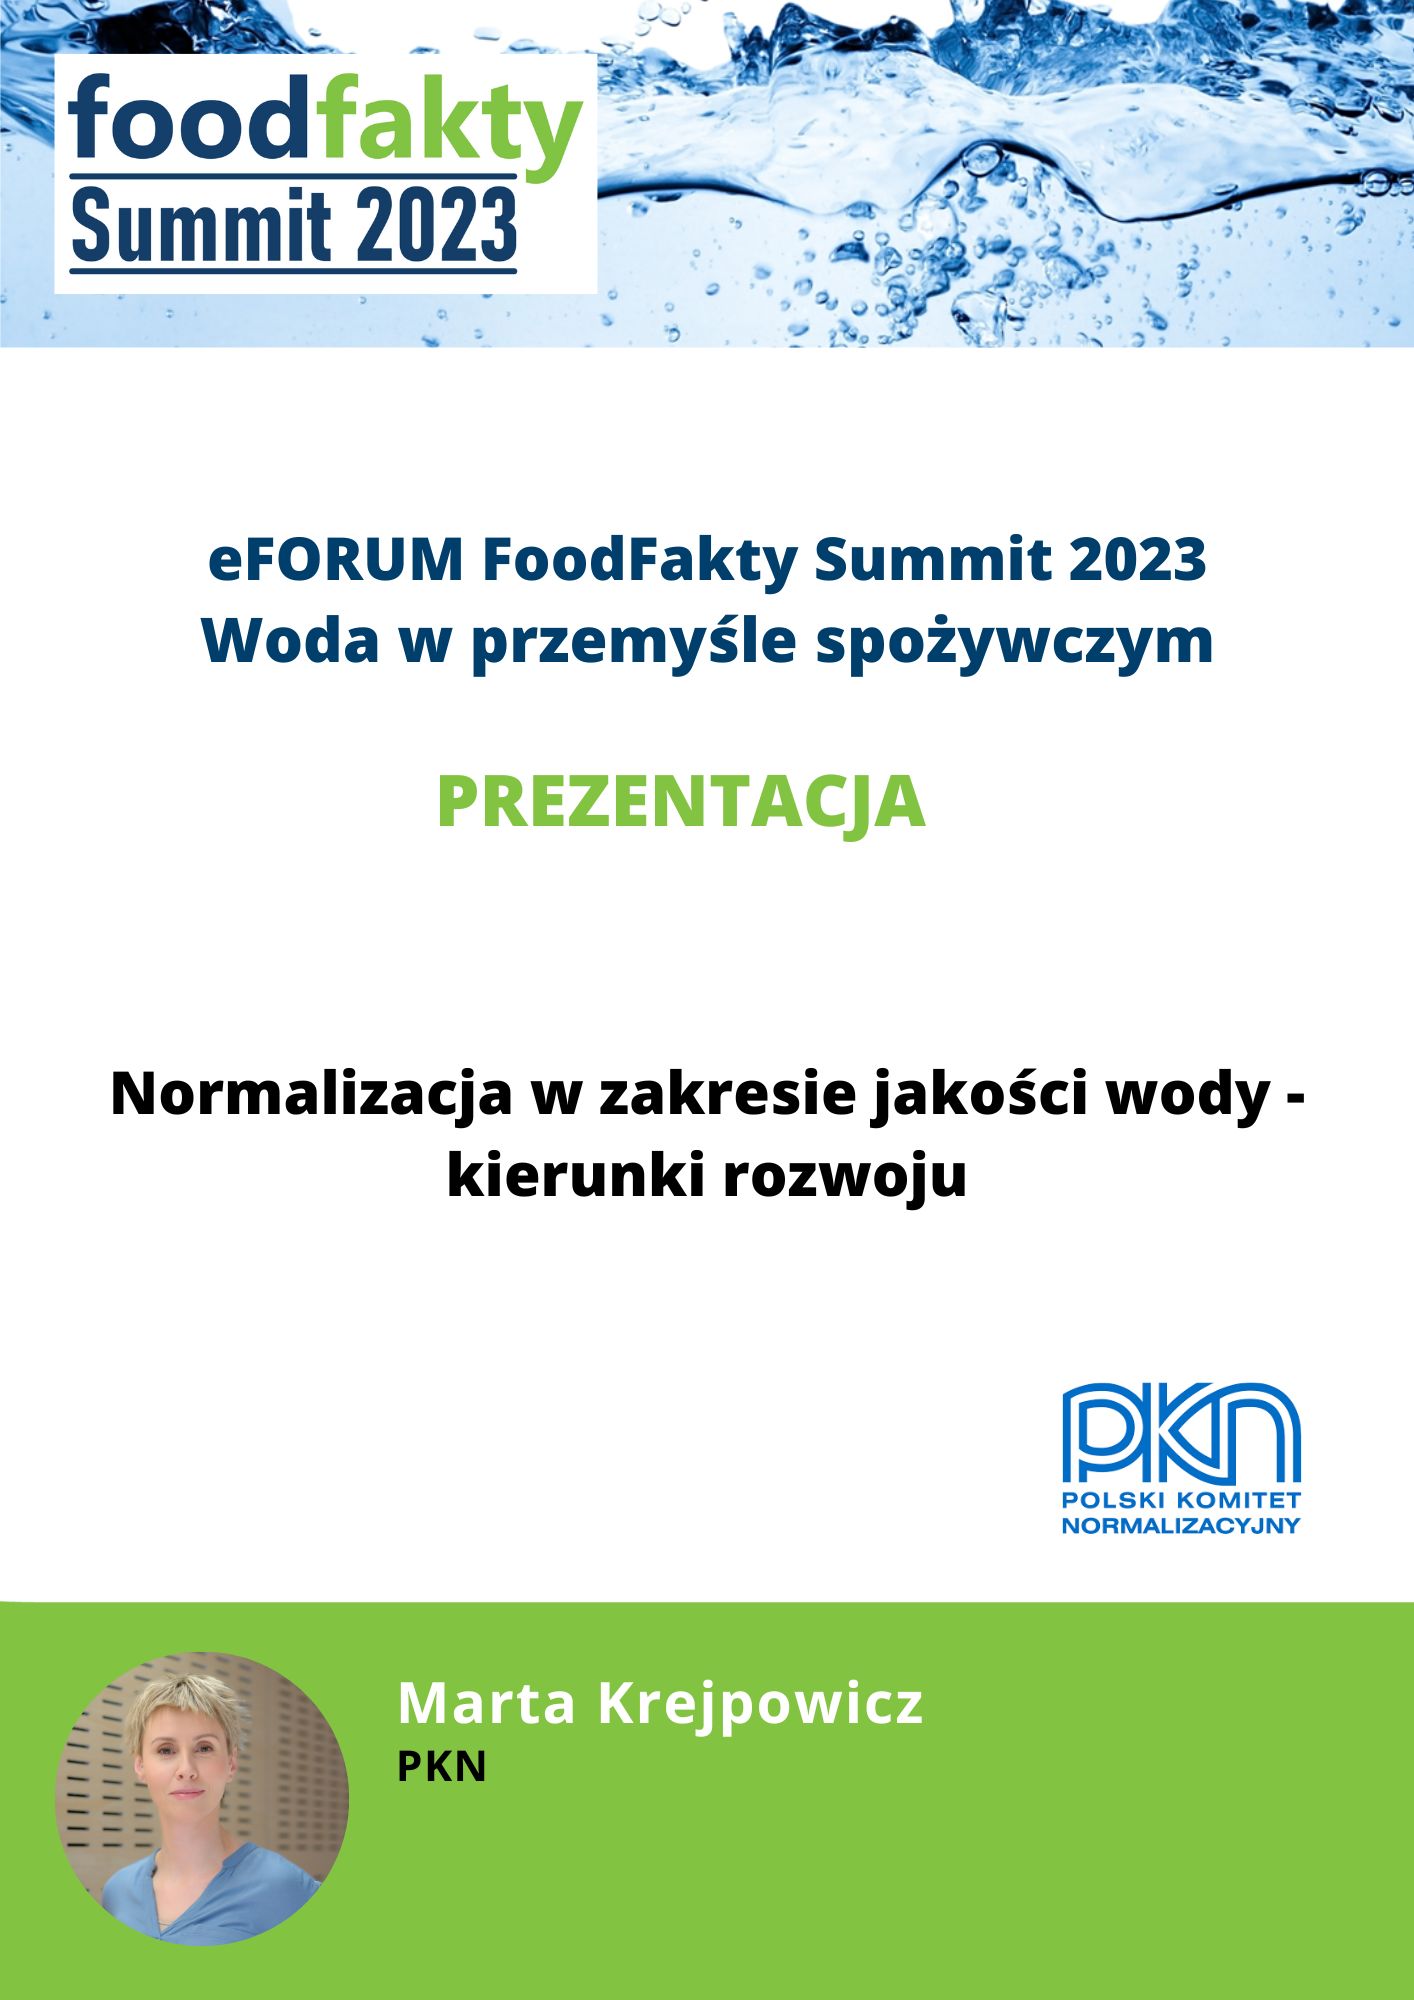 FoodFakty Summit Woda w przemyśle spożywczym - prezentacja PKN